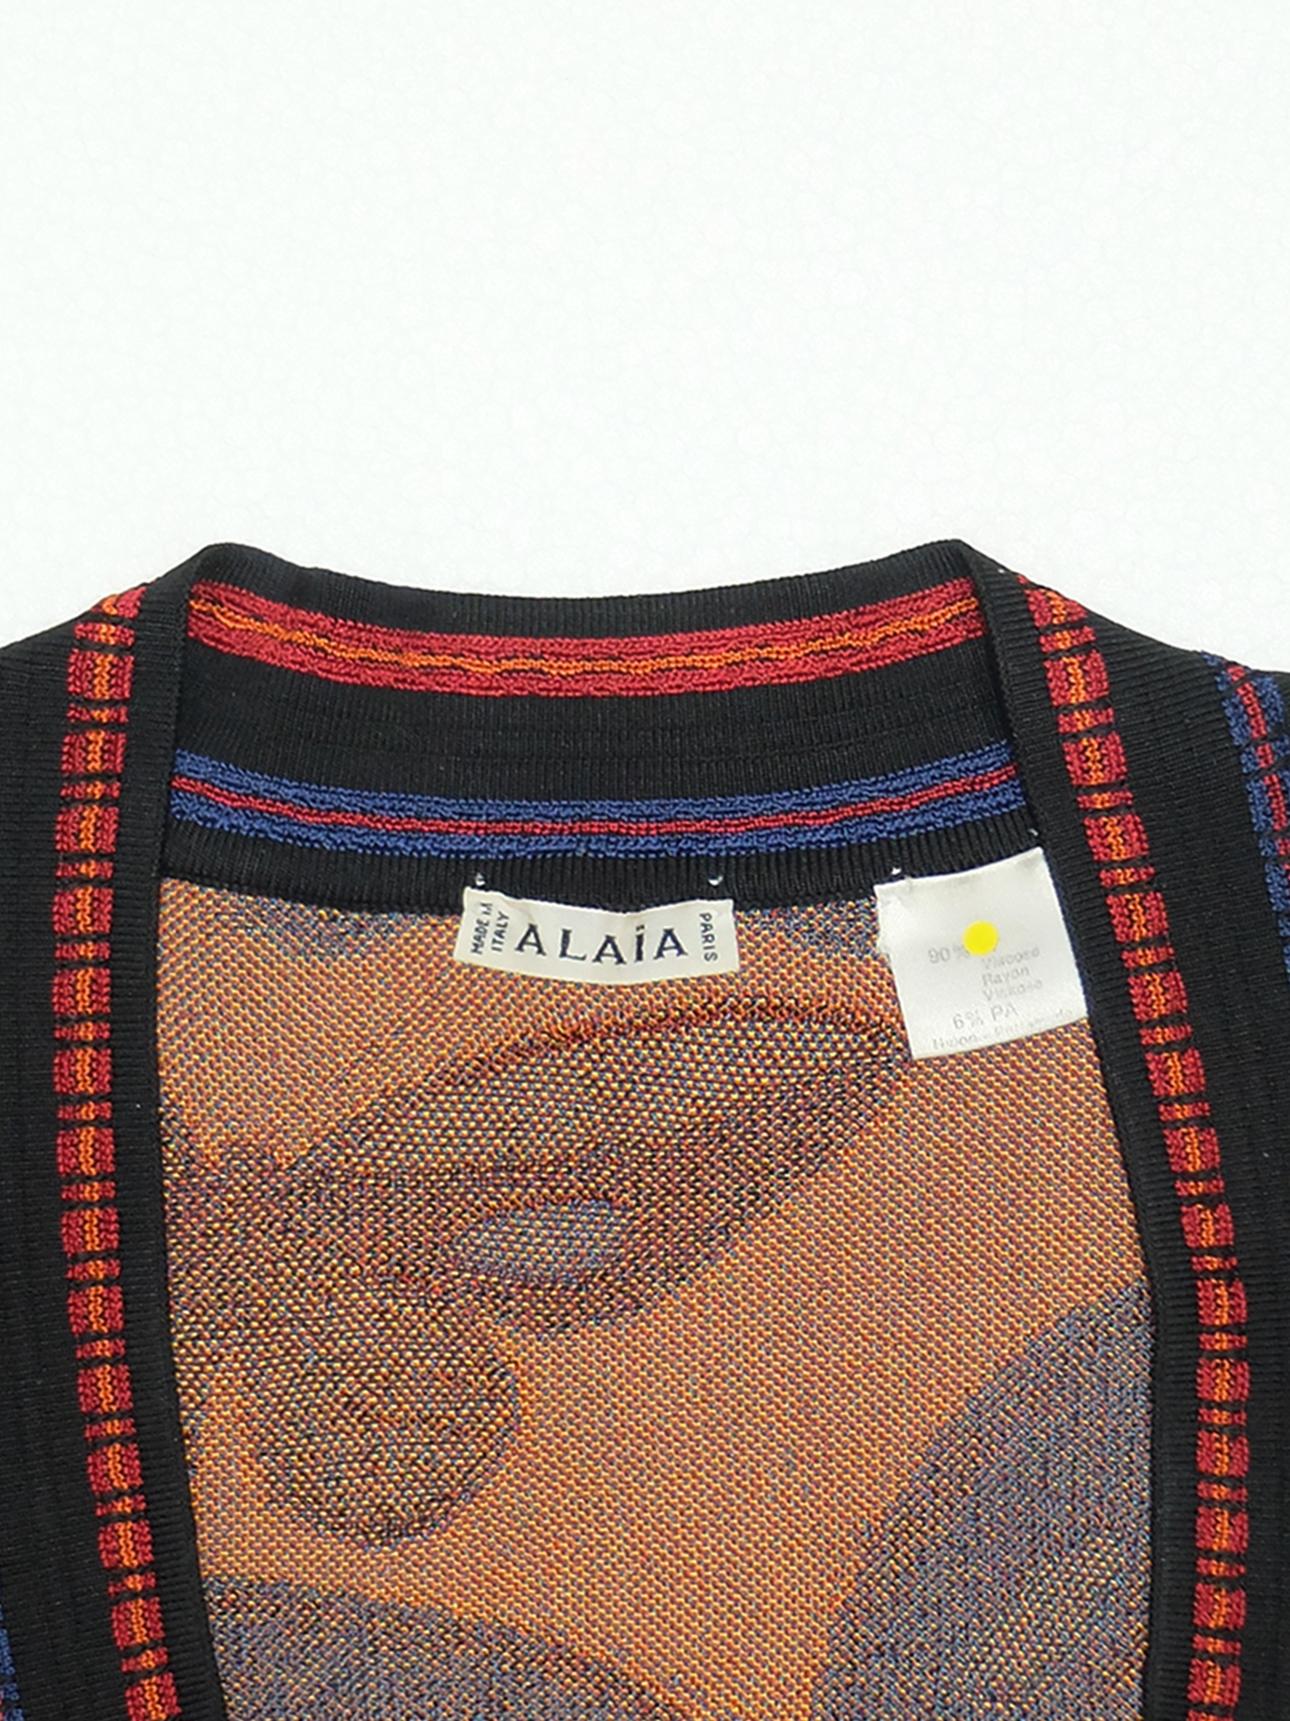 Women's Azzedine Alaïa FW1991 Butterfly Knit Top For Sale